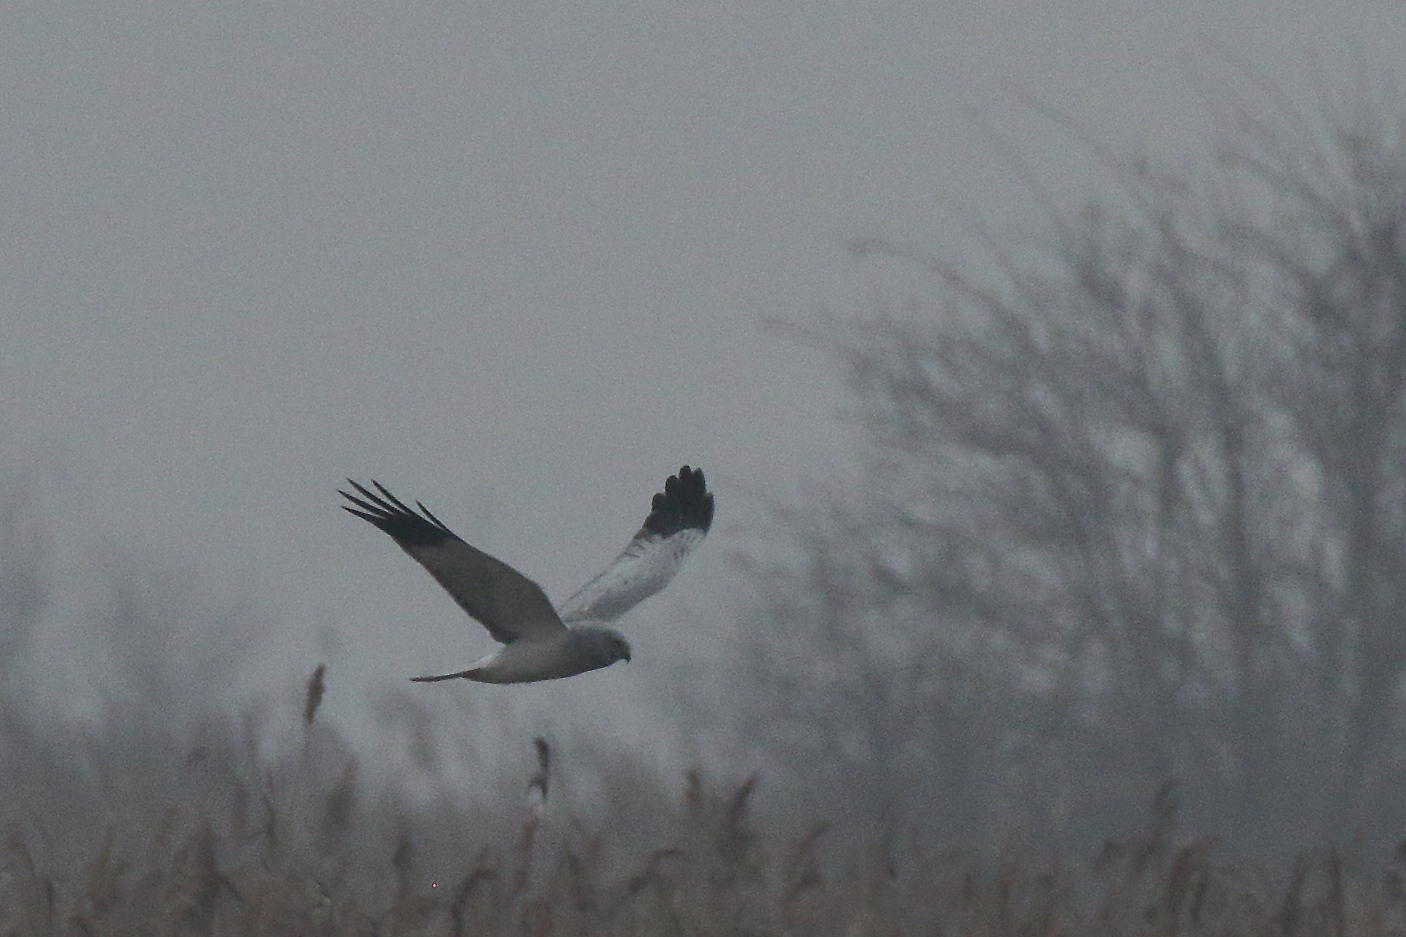 Male harrier or White kite...